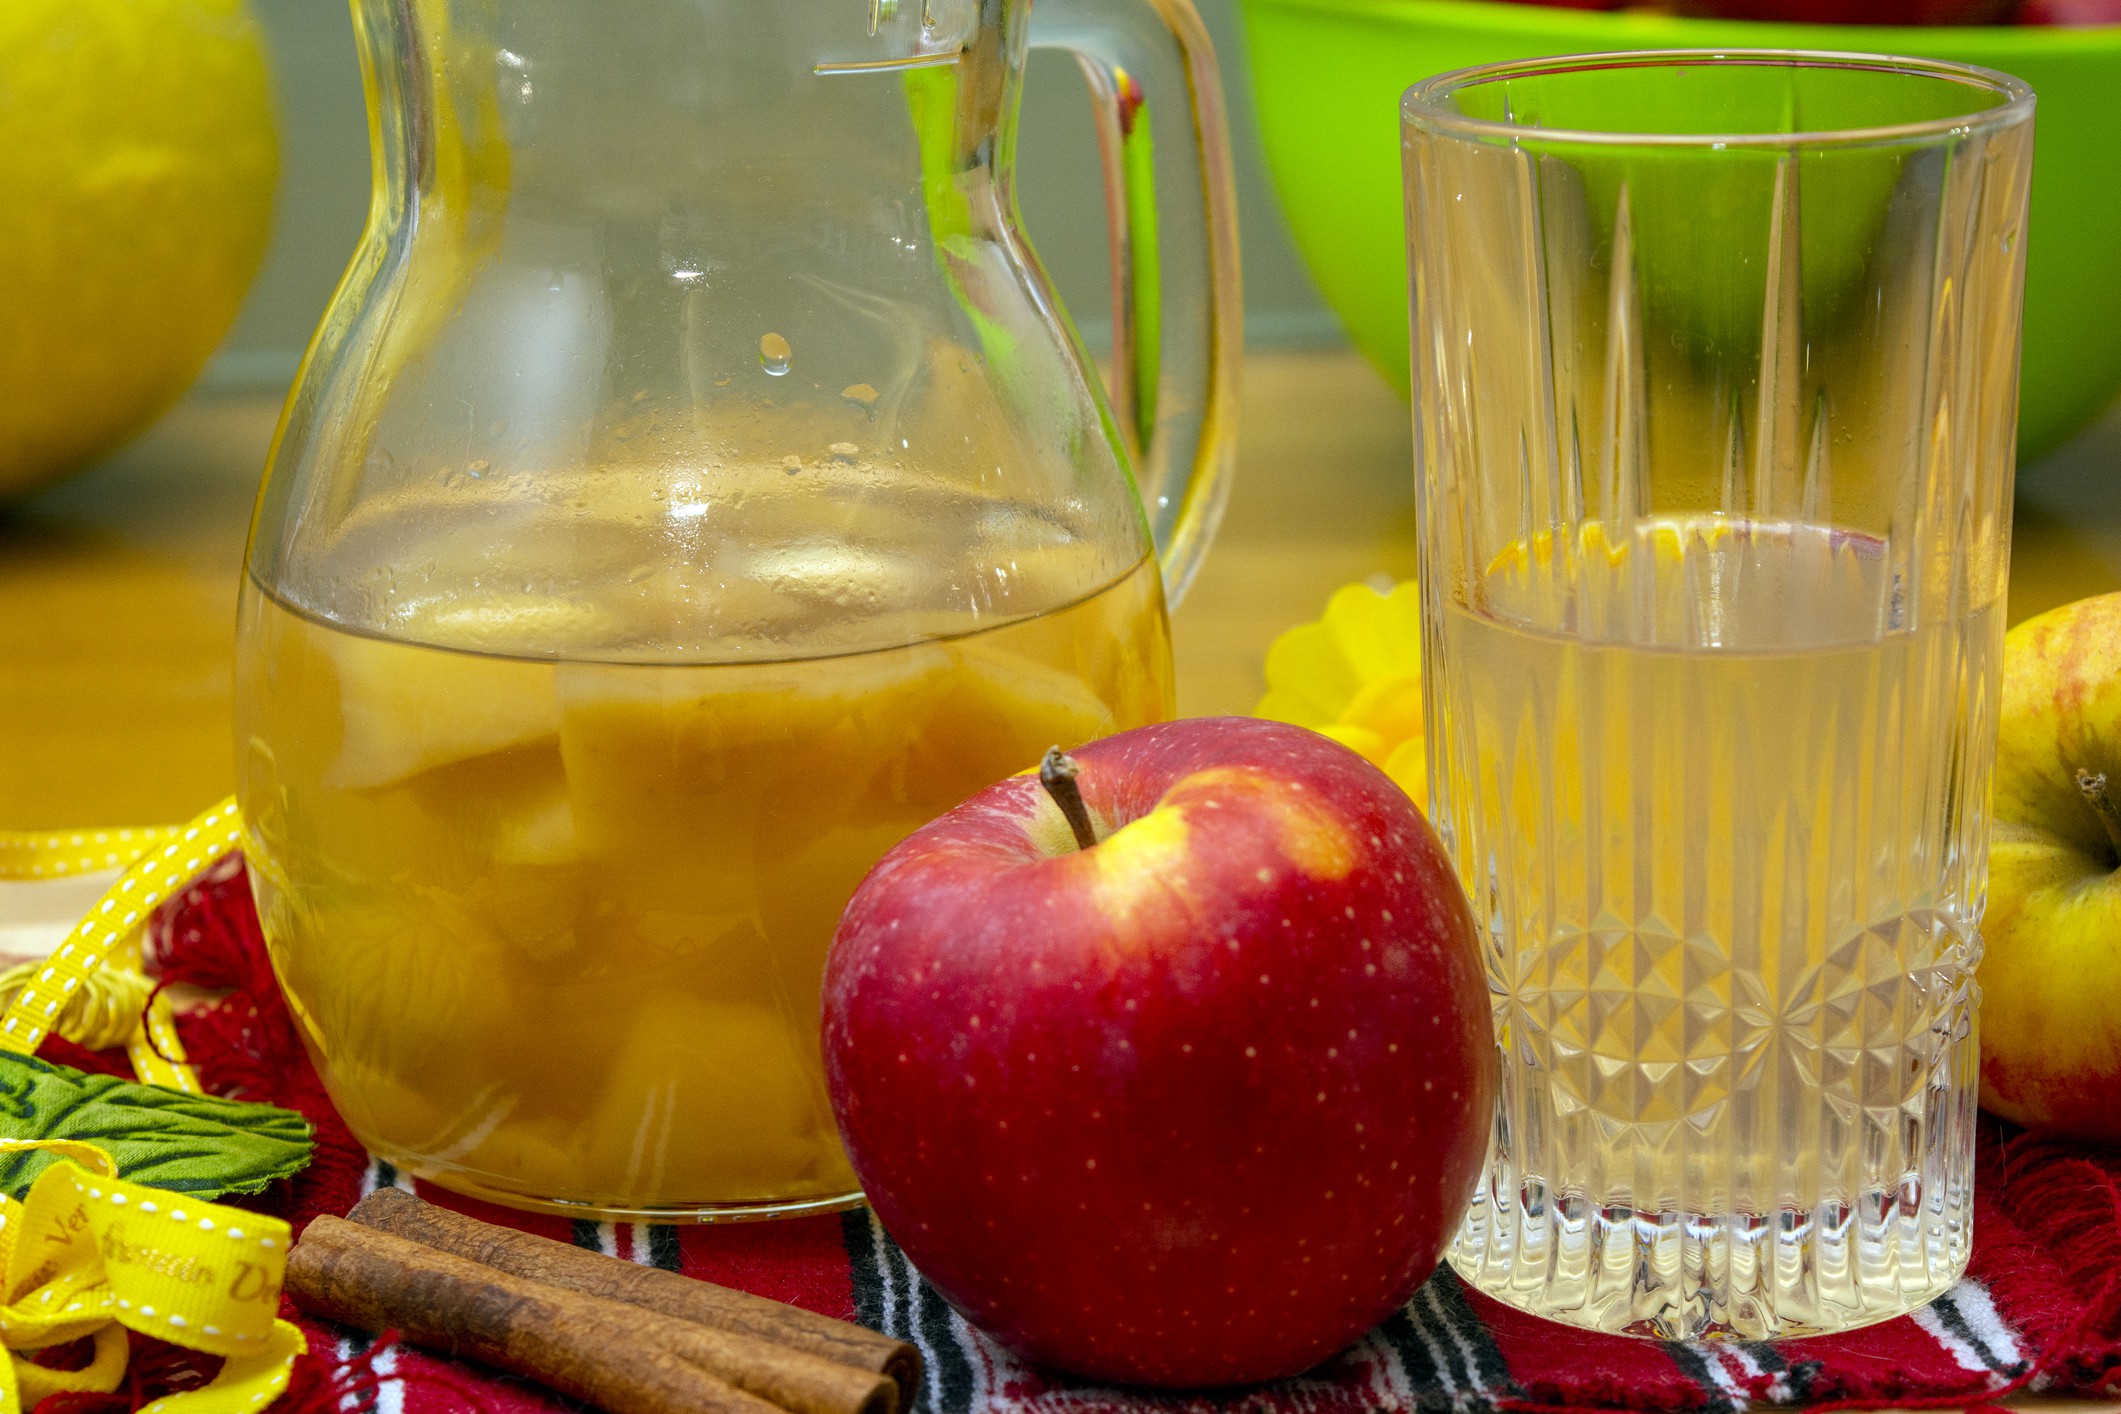 Compot de mere fără zahăr - Rețeta simplă și naturală